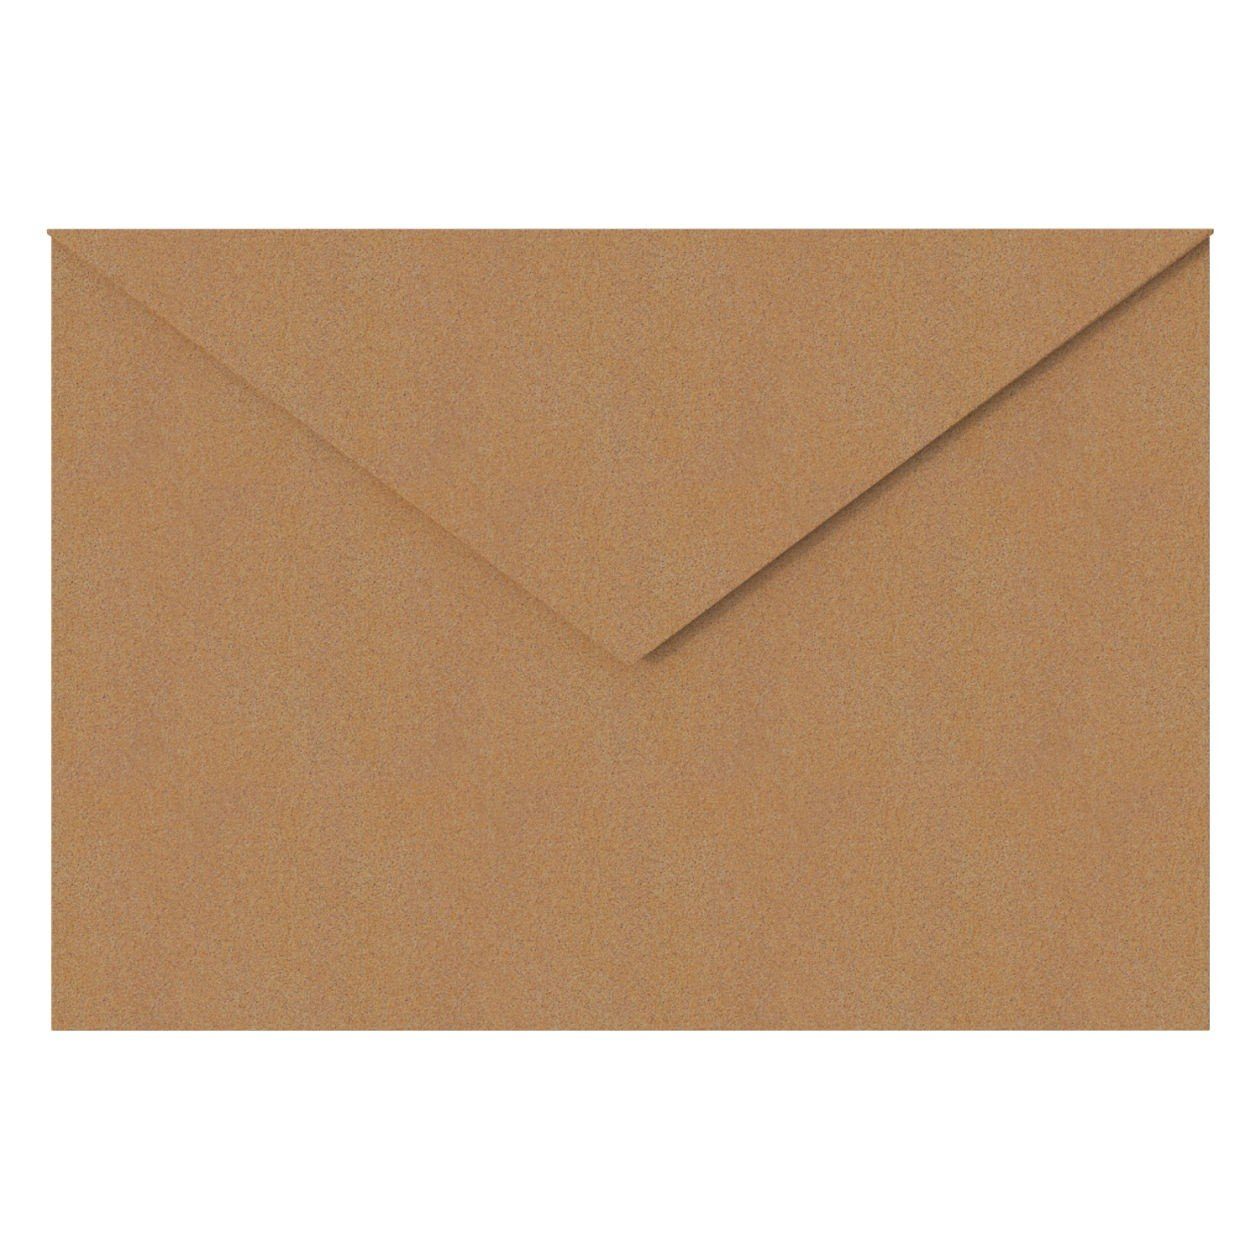 Bravios Briefkasten Briefkasten Rost Letter